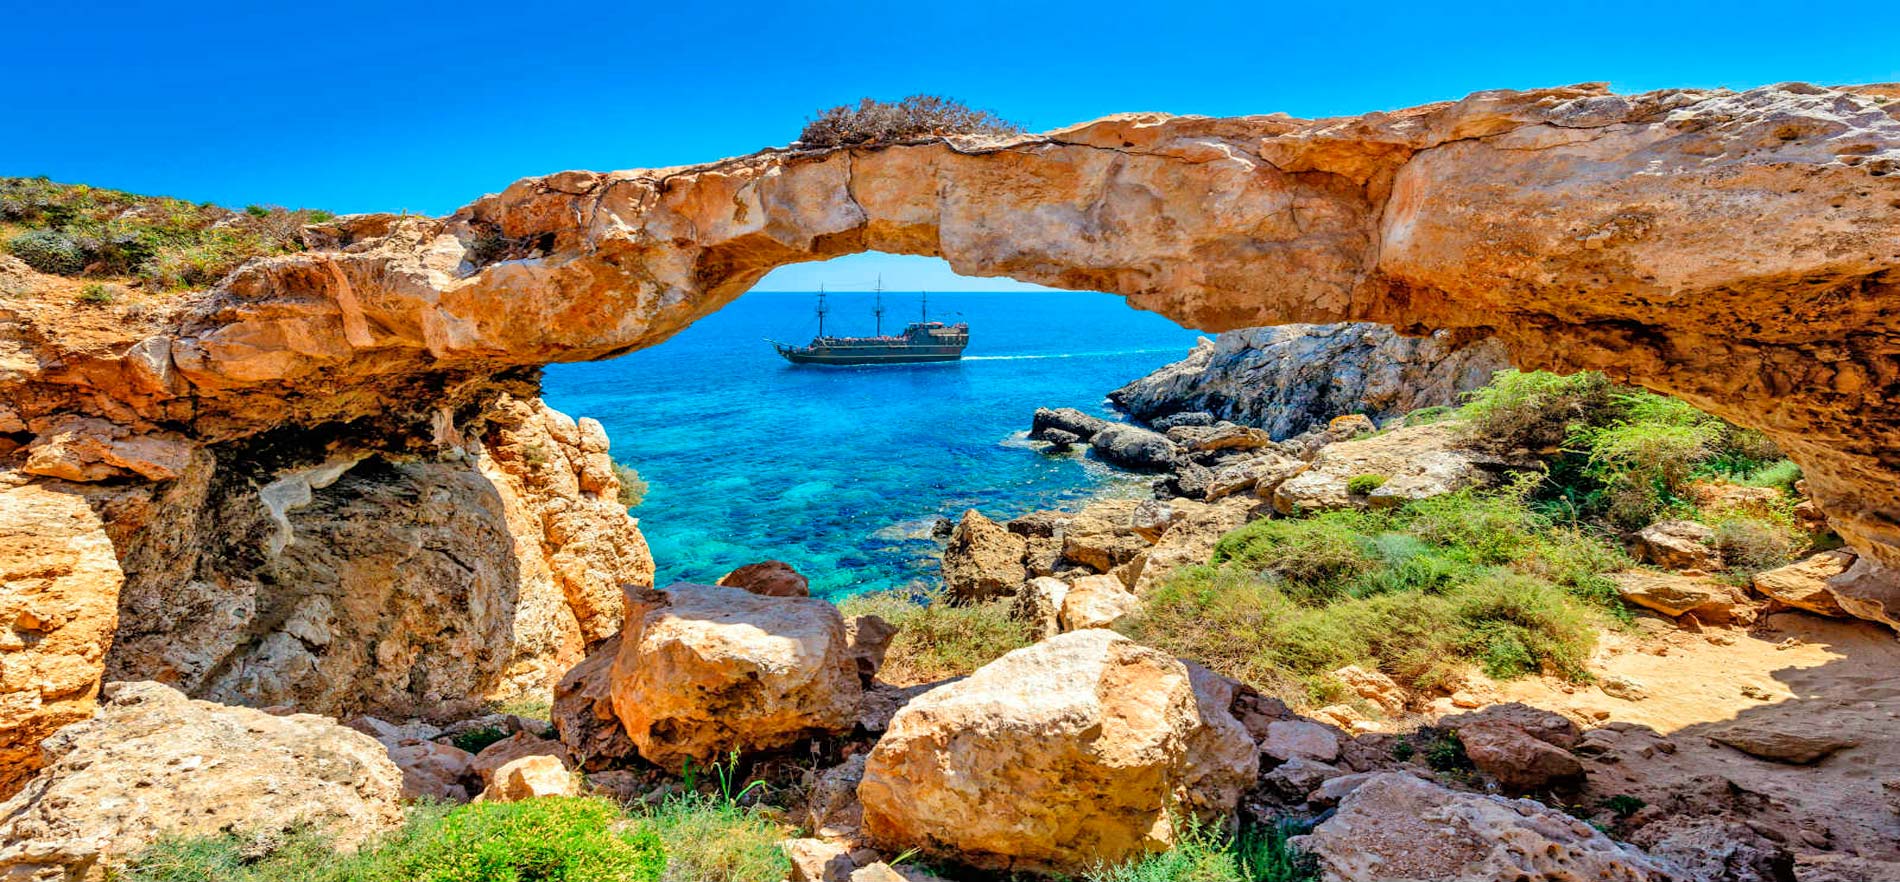 Туристическая страховка для поездки на Кипр